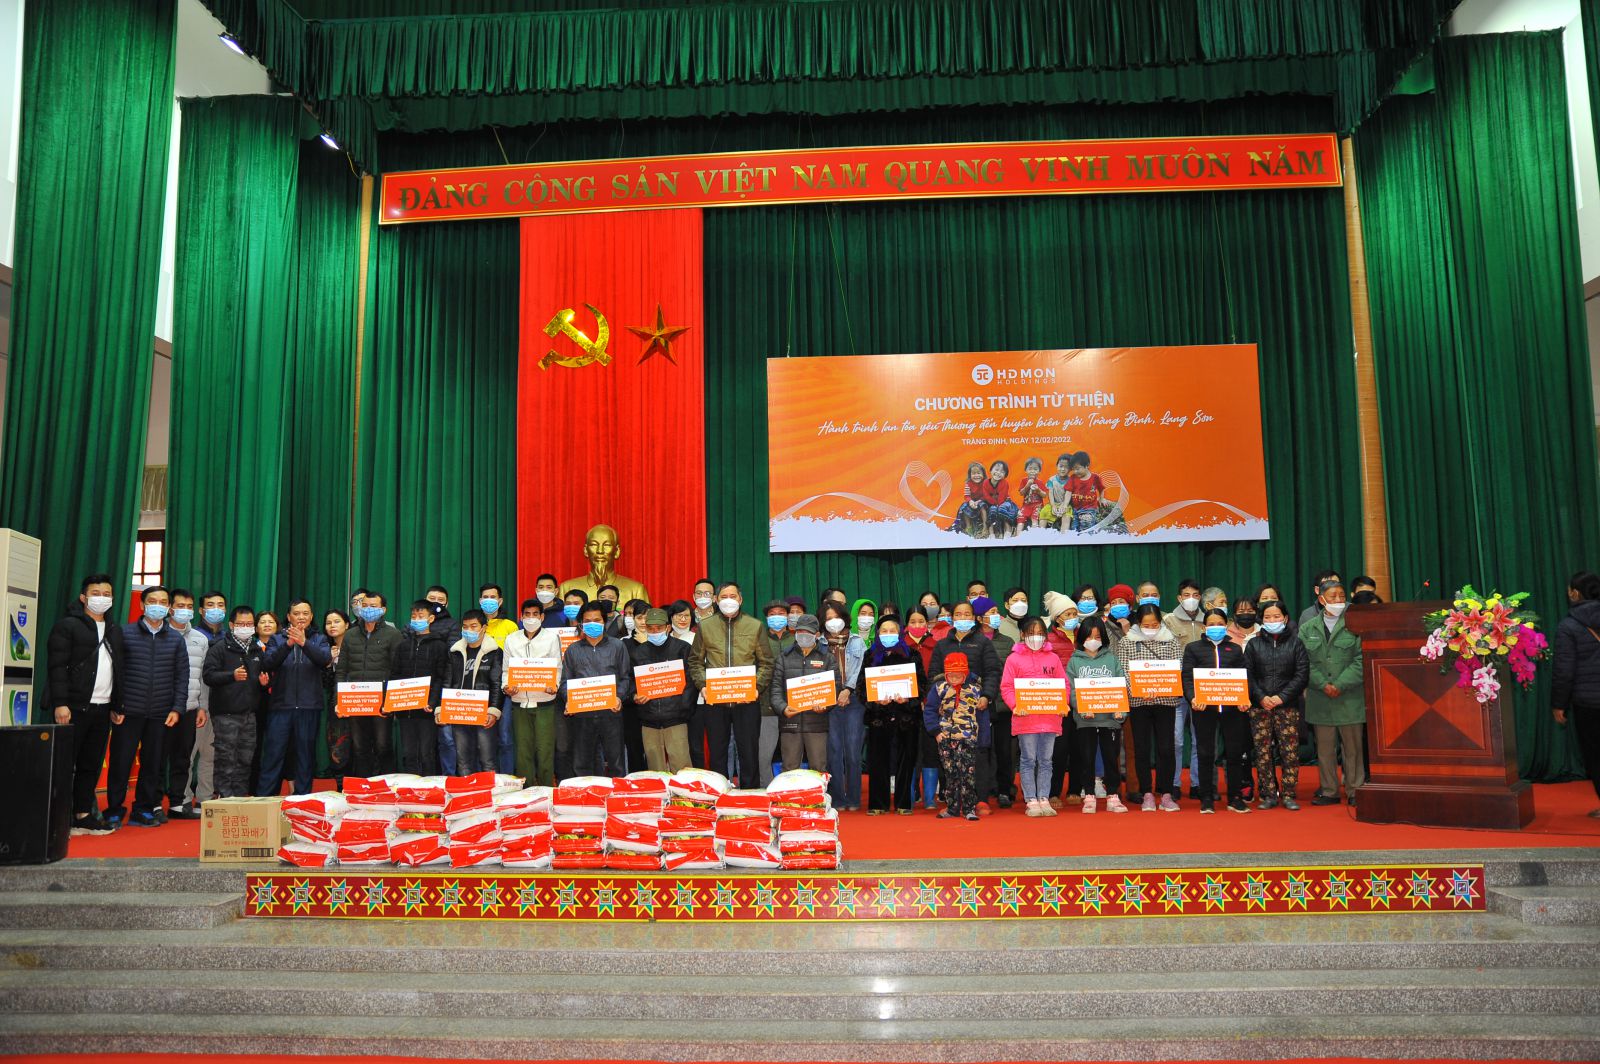 Tập đoàn HDMon Holdings triển khai chương trình thiện nguyện ý nghĩa đến với bàp/con huyện miền núi biên giới Tràng Định, tỉnh Lạng Sơn.